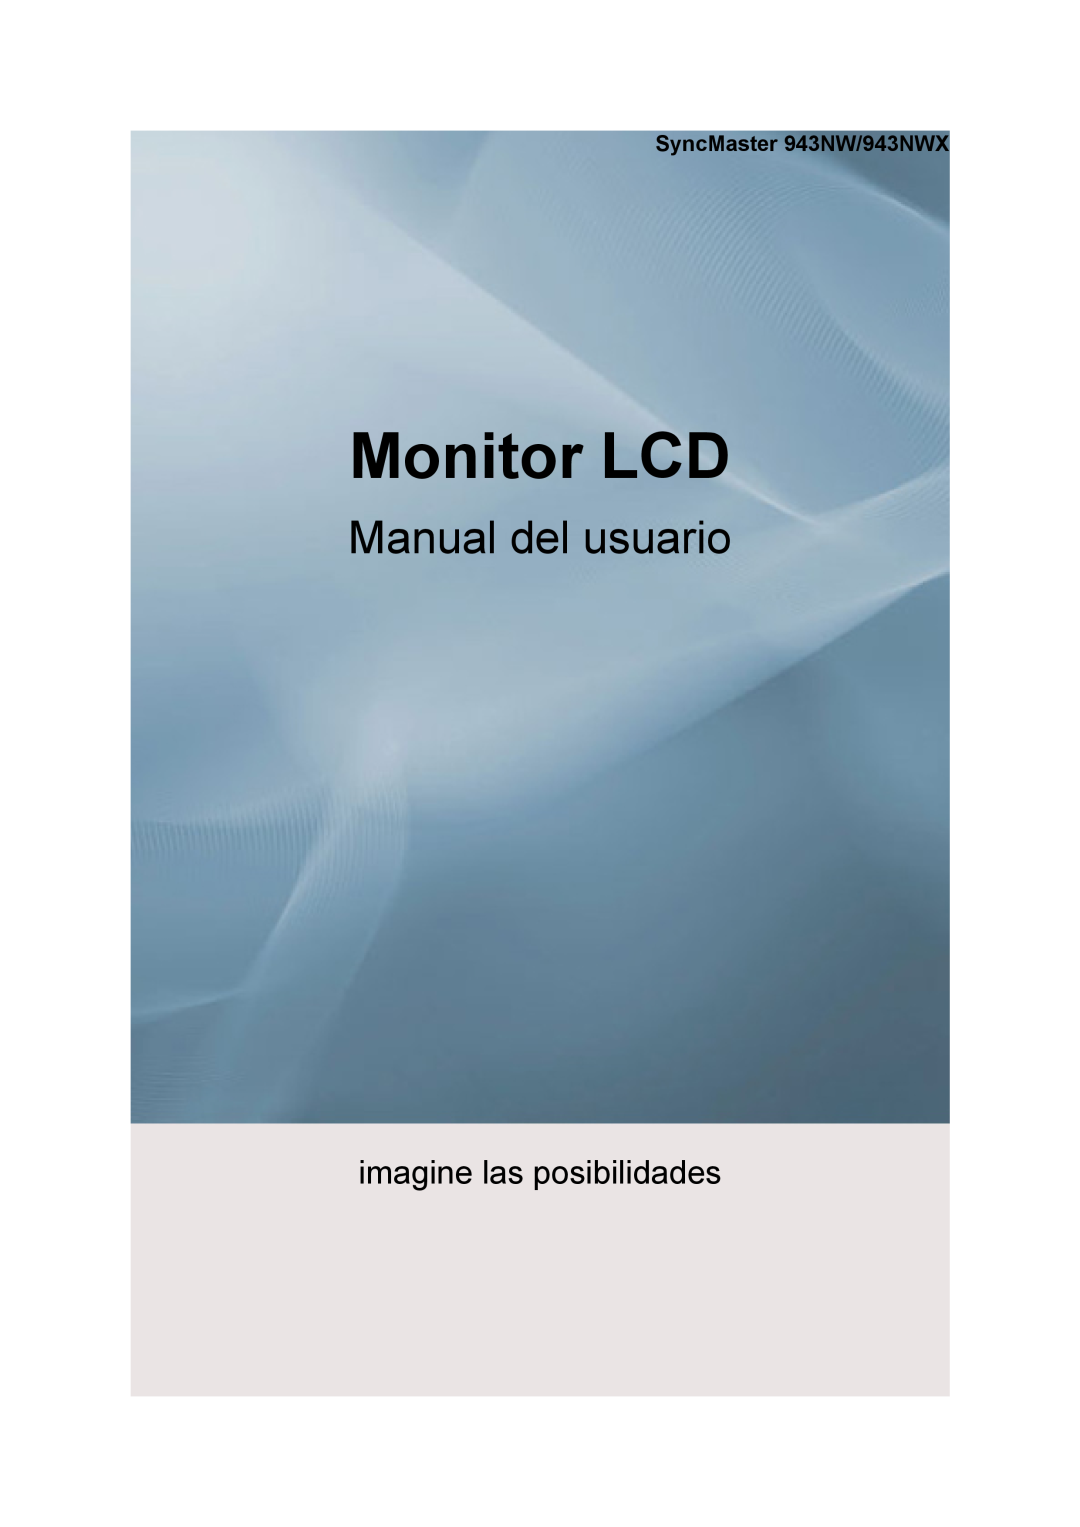 Samsung LS19MYNKBB/EDC manual SyncMaster 943NW/943NWX, Moniteur LCD, Manuel de lutilisateur, imaginez les possibilités 